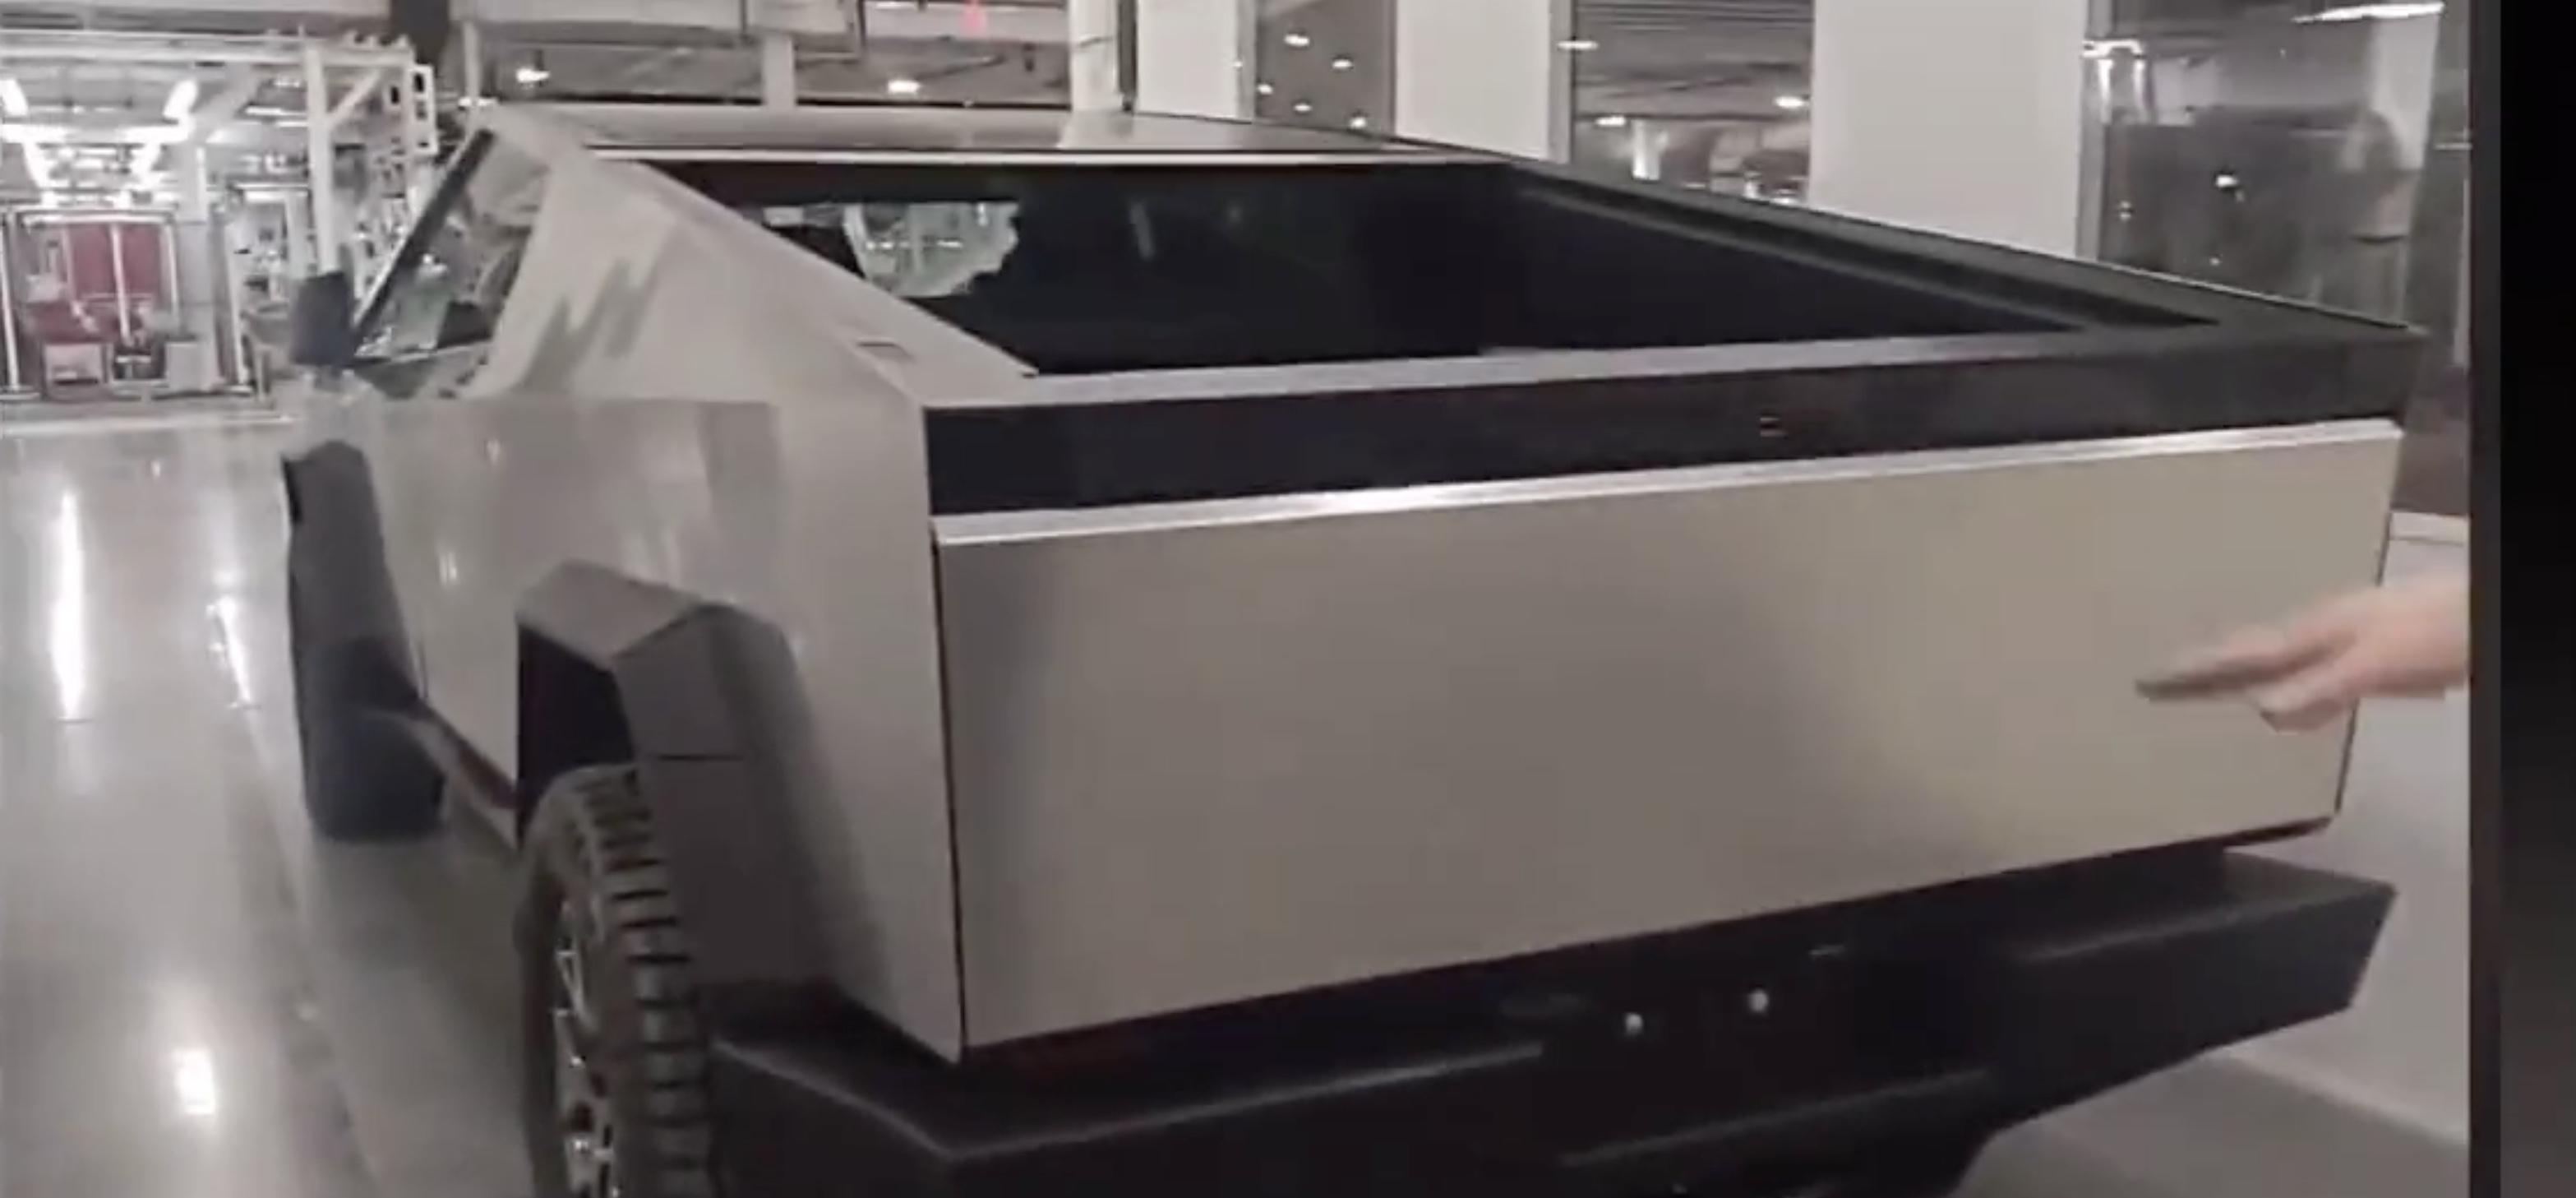 Tesla Cybertruck Prototype Shown In Detail New Leaked